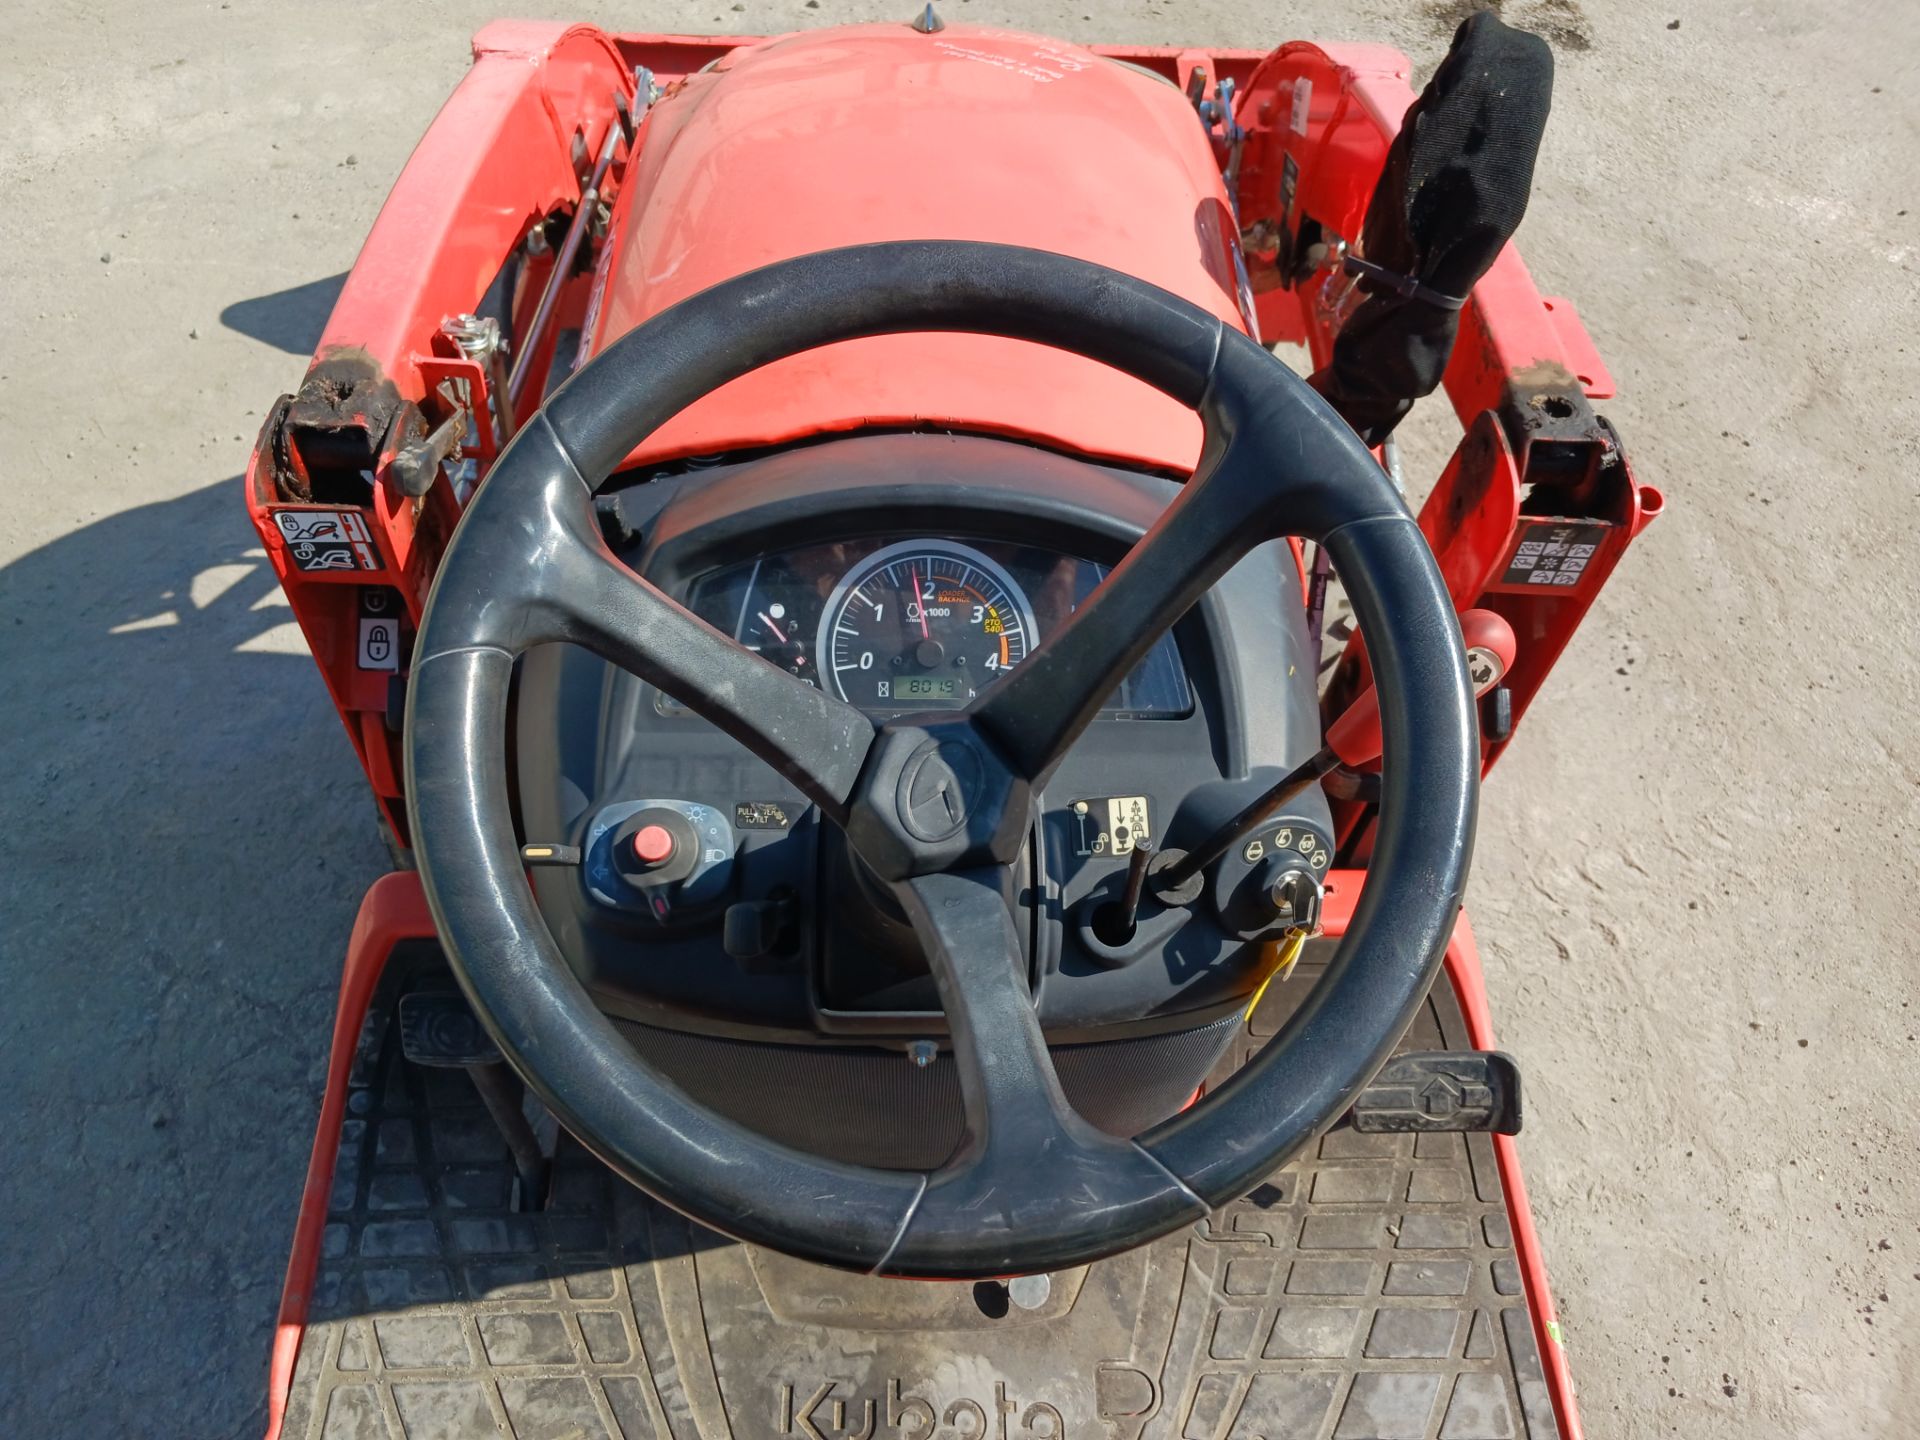 2019 Kubota BX23S Backhoe Loader Tractor - Image 20 of 22